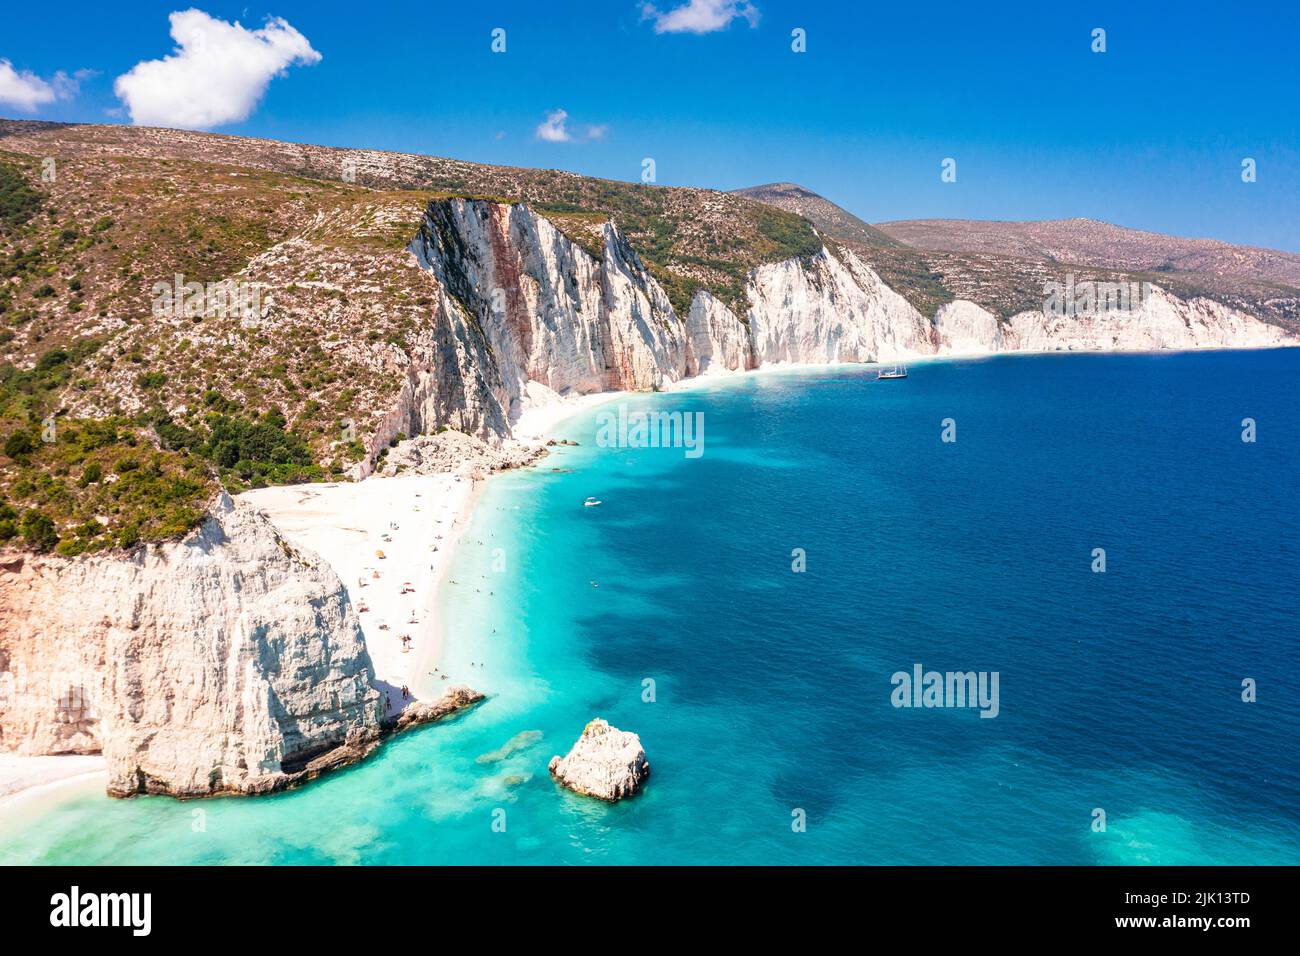 Los turistas tomando el sol en la idílica playa Fteri situado entre los acantilados y la laguna azul, vista aérea, Kefalonia, Islas Jónicas, las islas griegas, Grecia, Europa Foto de stock